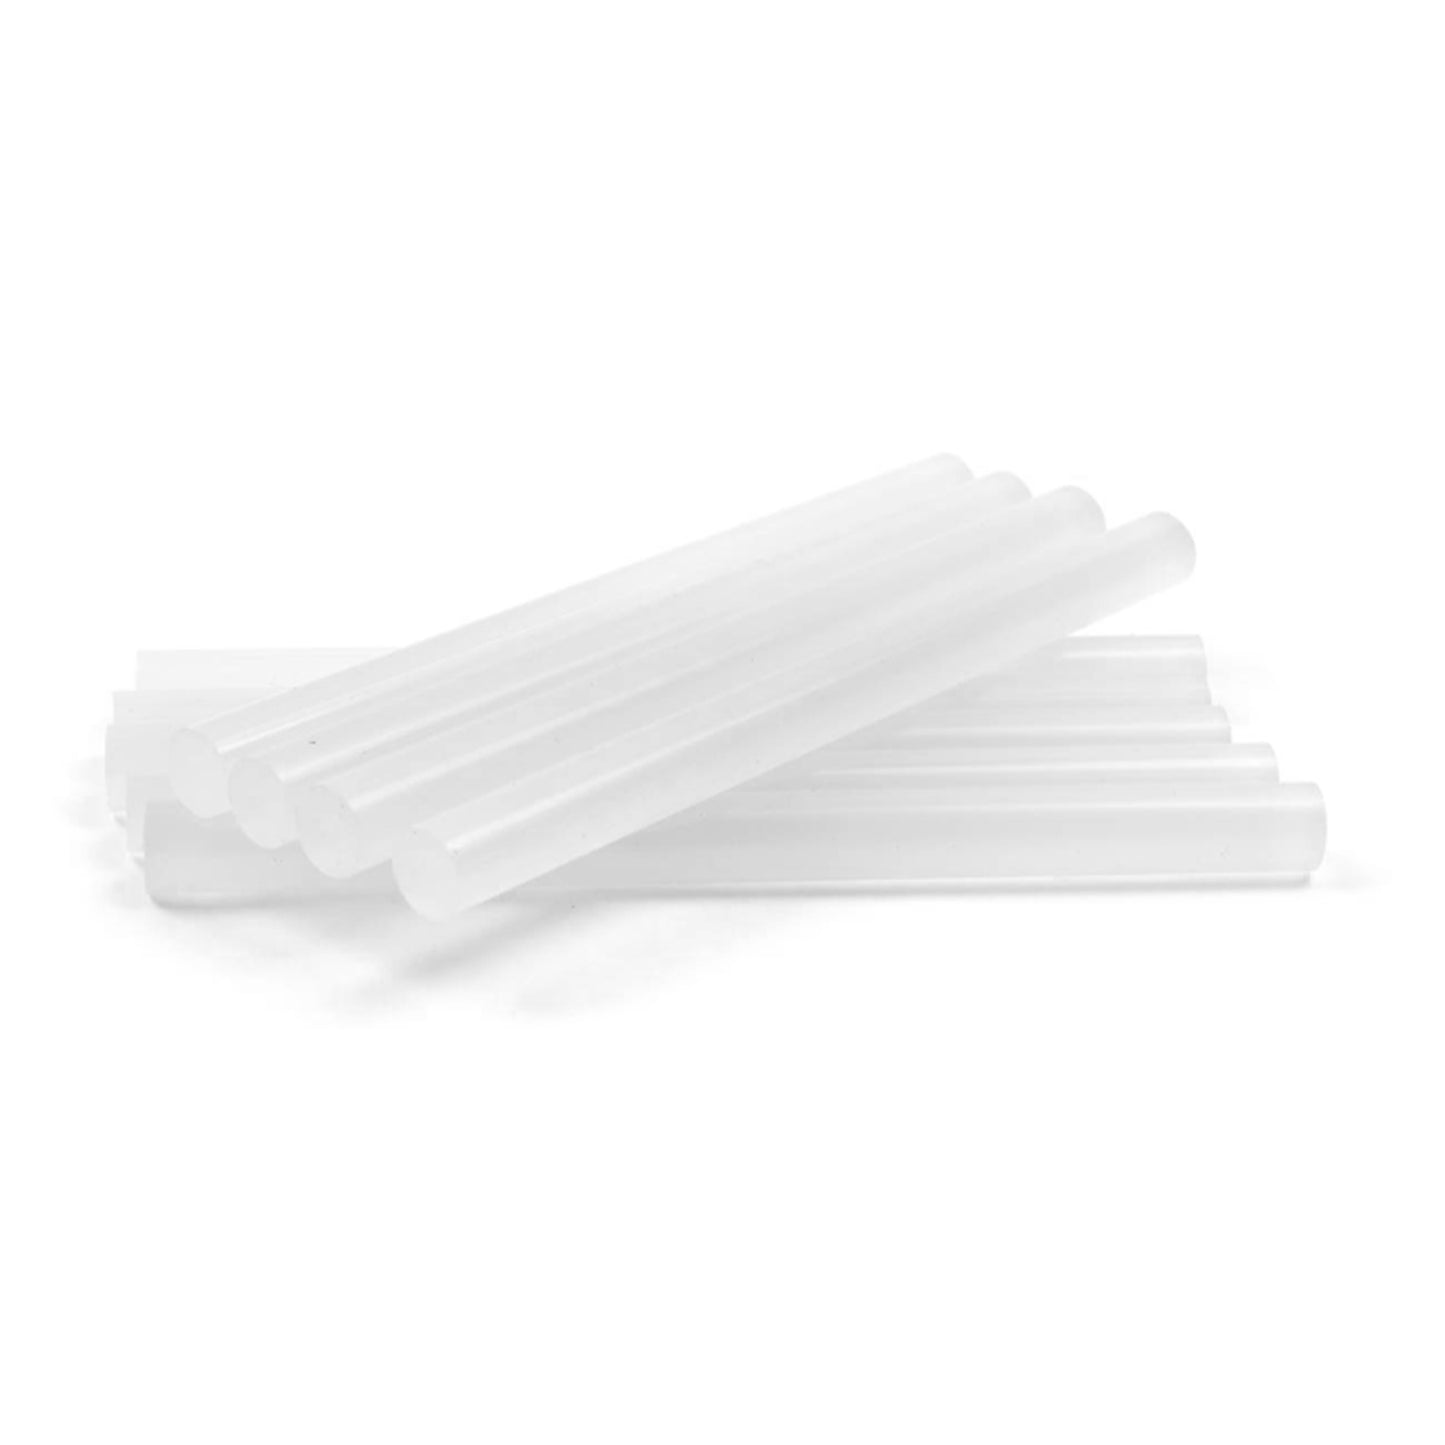 GS-1051-10 - 10" Clear Hot Glue Sticks